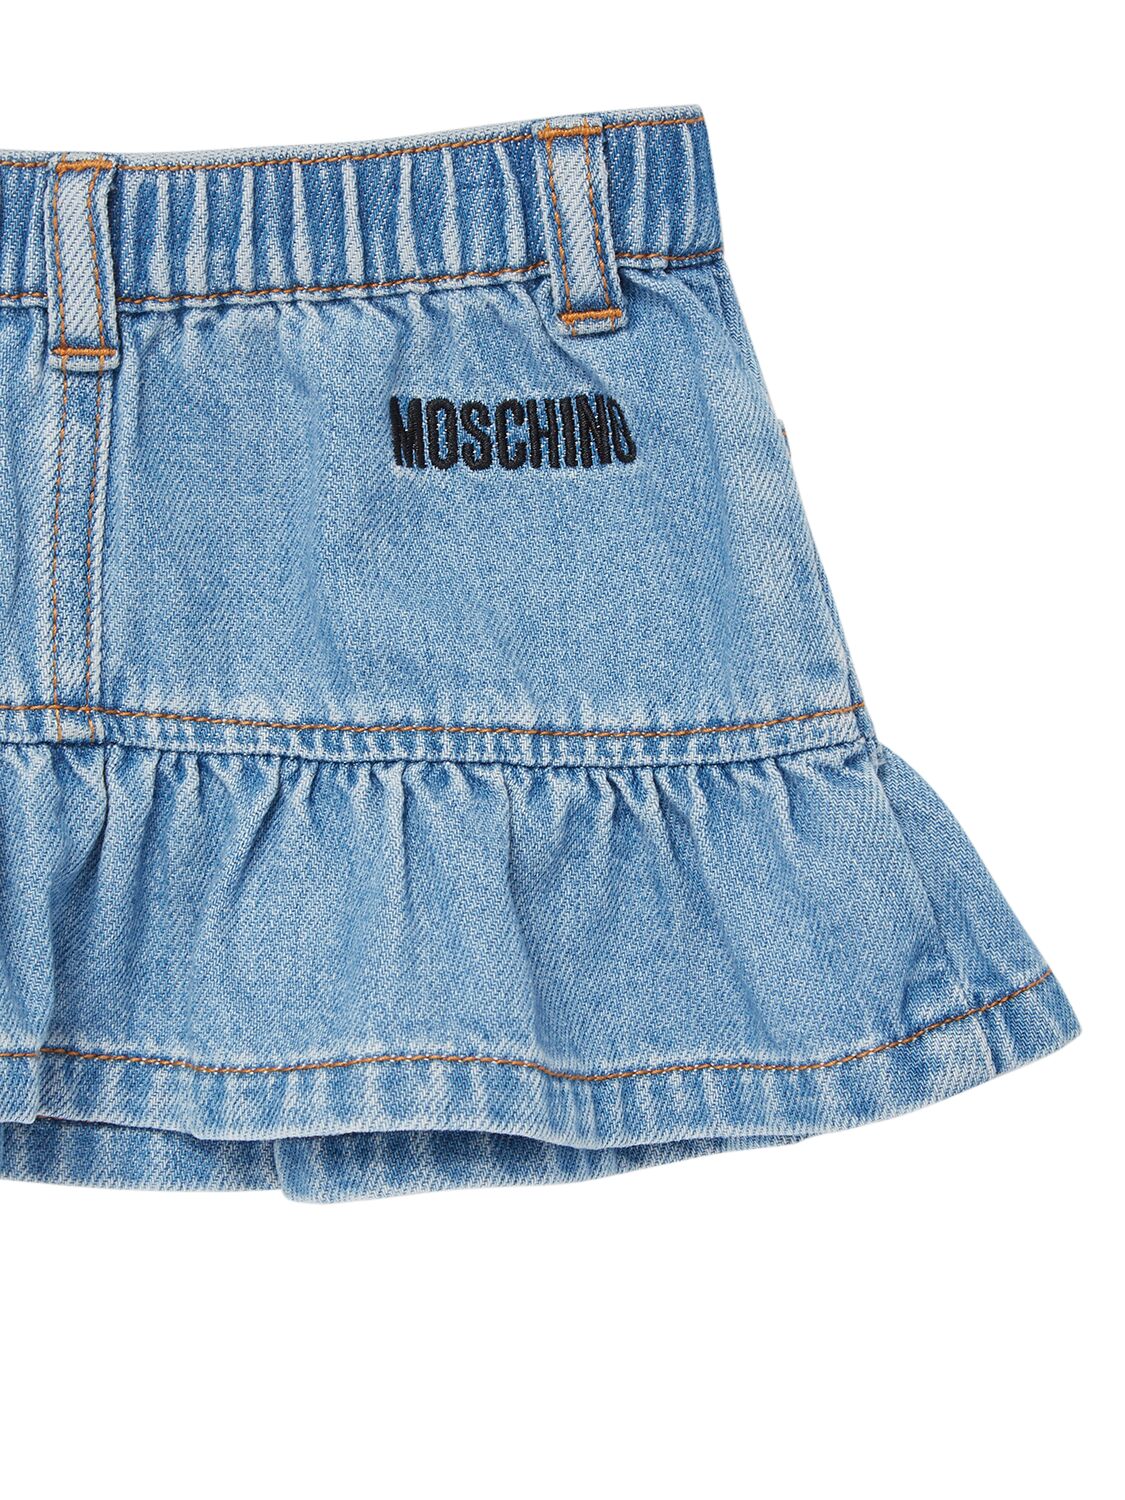 Shop Moschino Light Denim Skirt